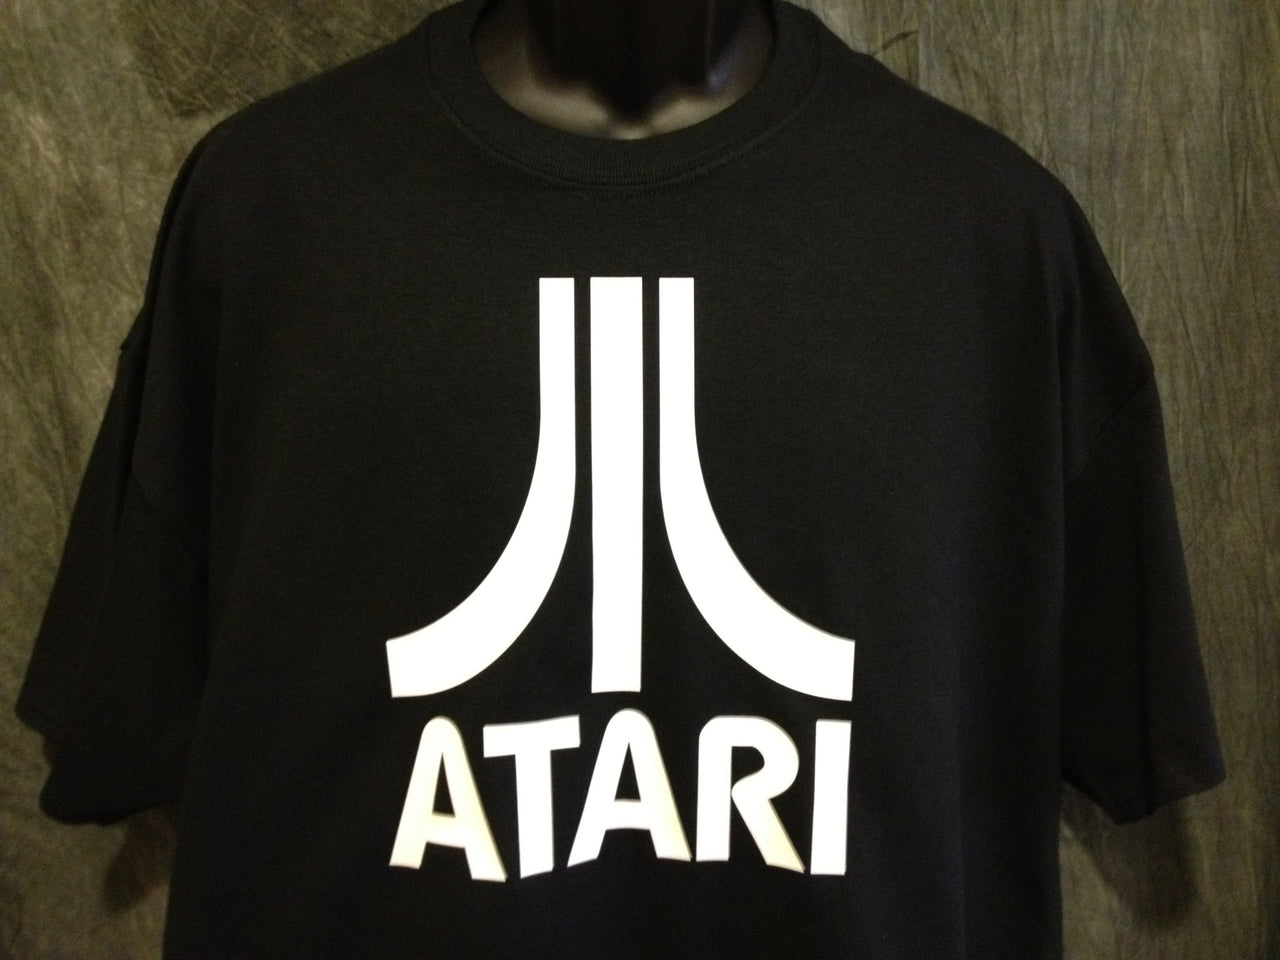 Atari Logo Tshirt: Black With White Print - TshirtNow.net - 2